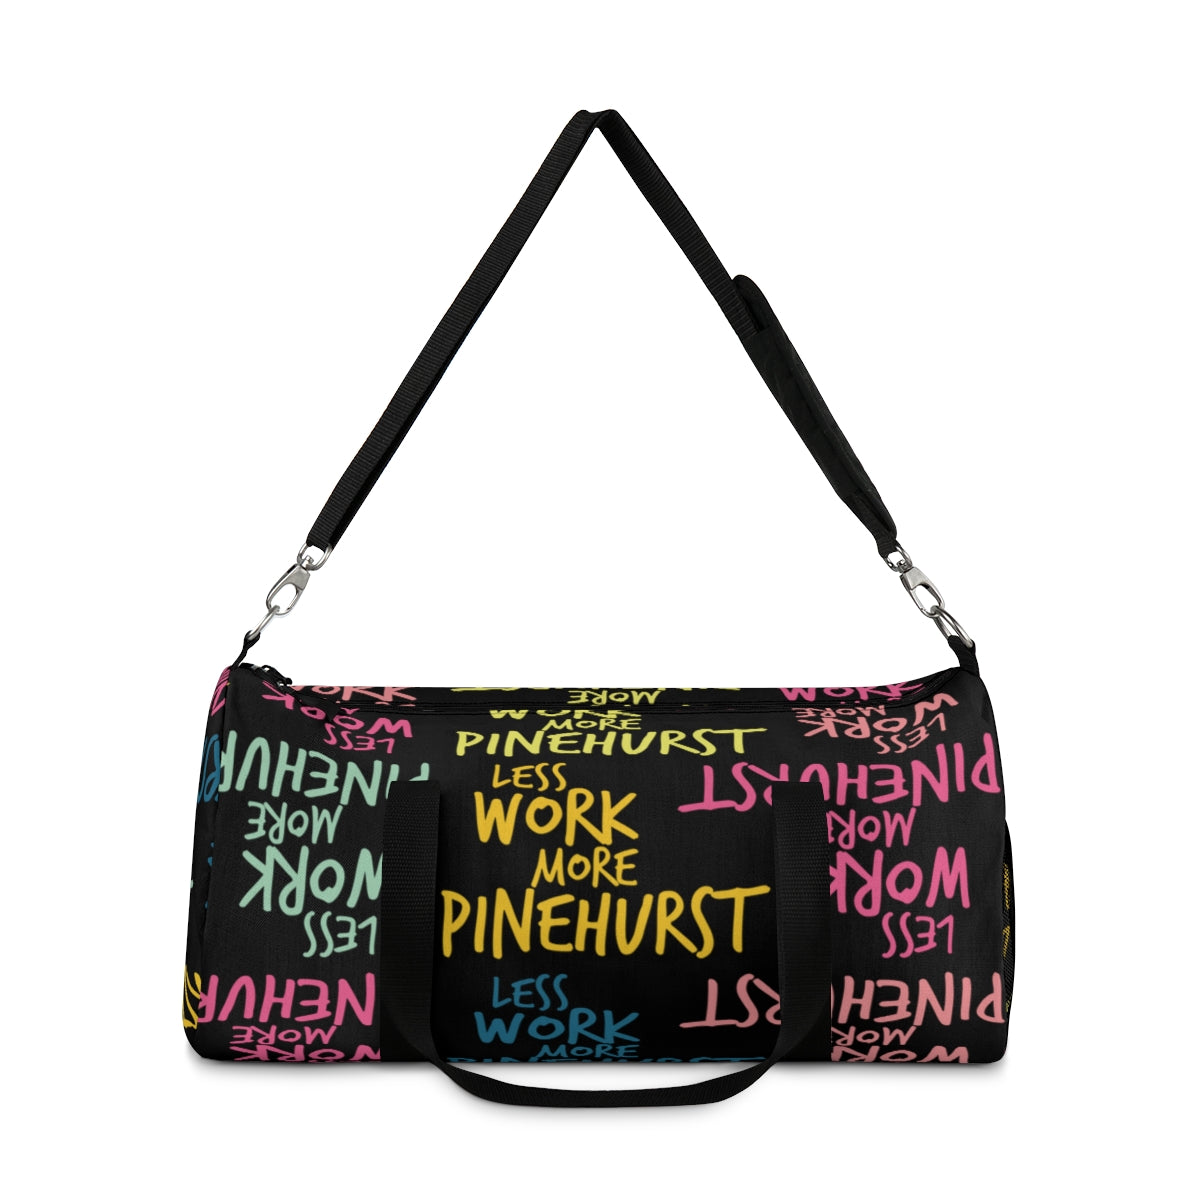 Less Work™ More Pinehurst Duffel Bag